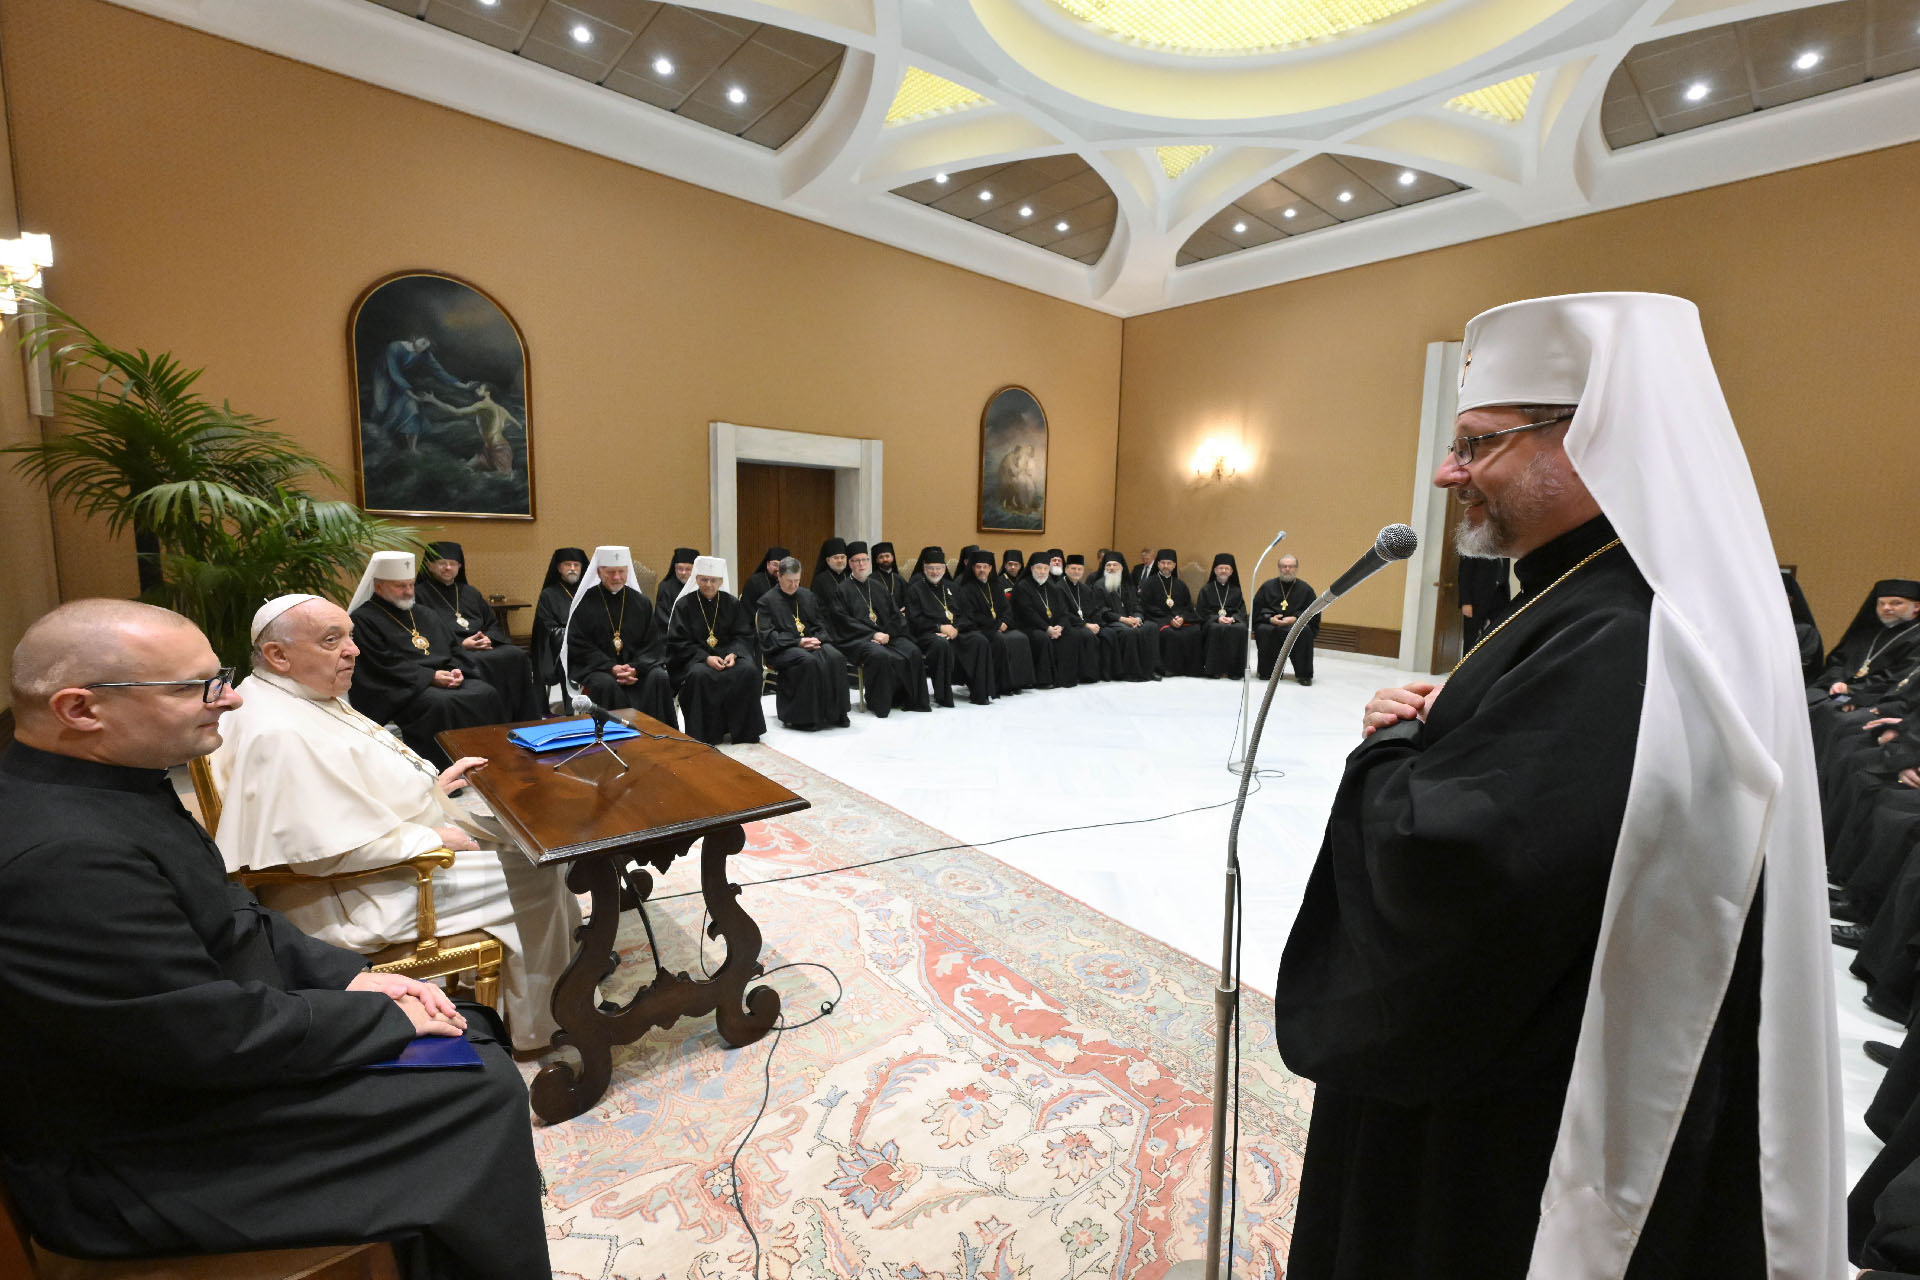 Selon le communiqué de l'UGCC, le pape et les évêques gréco-catholiques d'Ukraine ont eu un dialogue "franc" | © Vatican Media